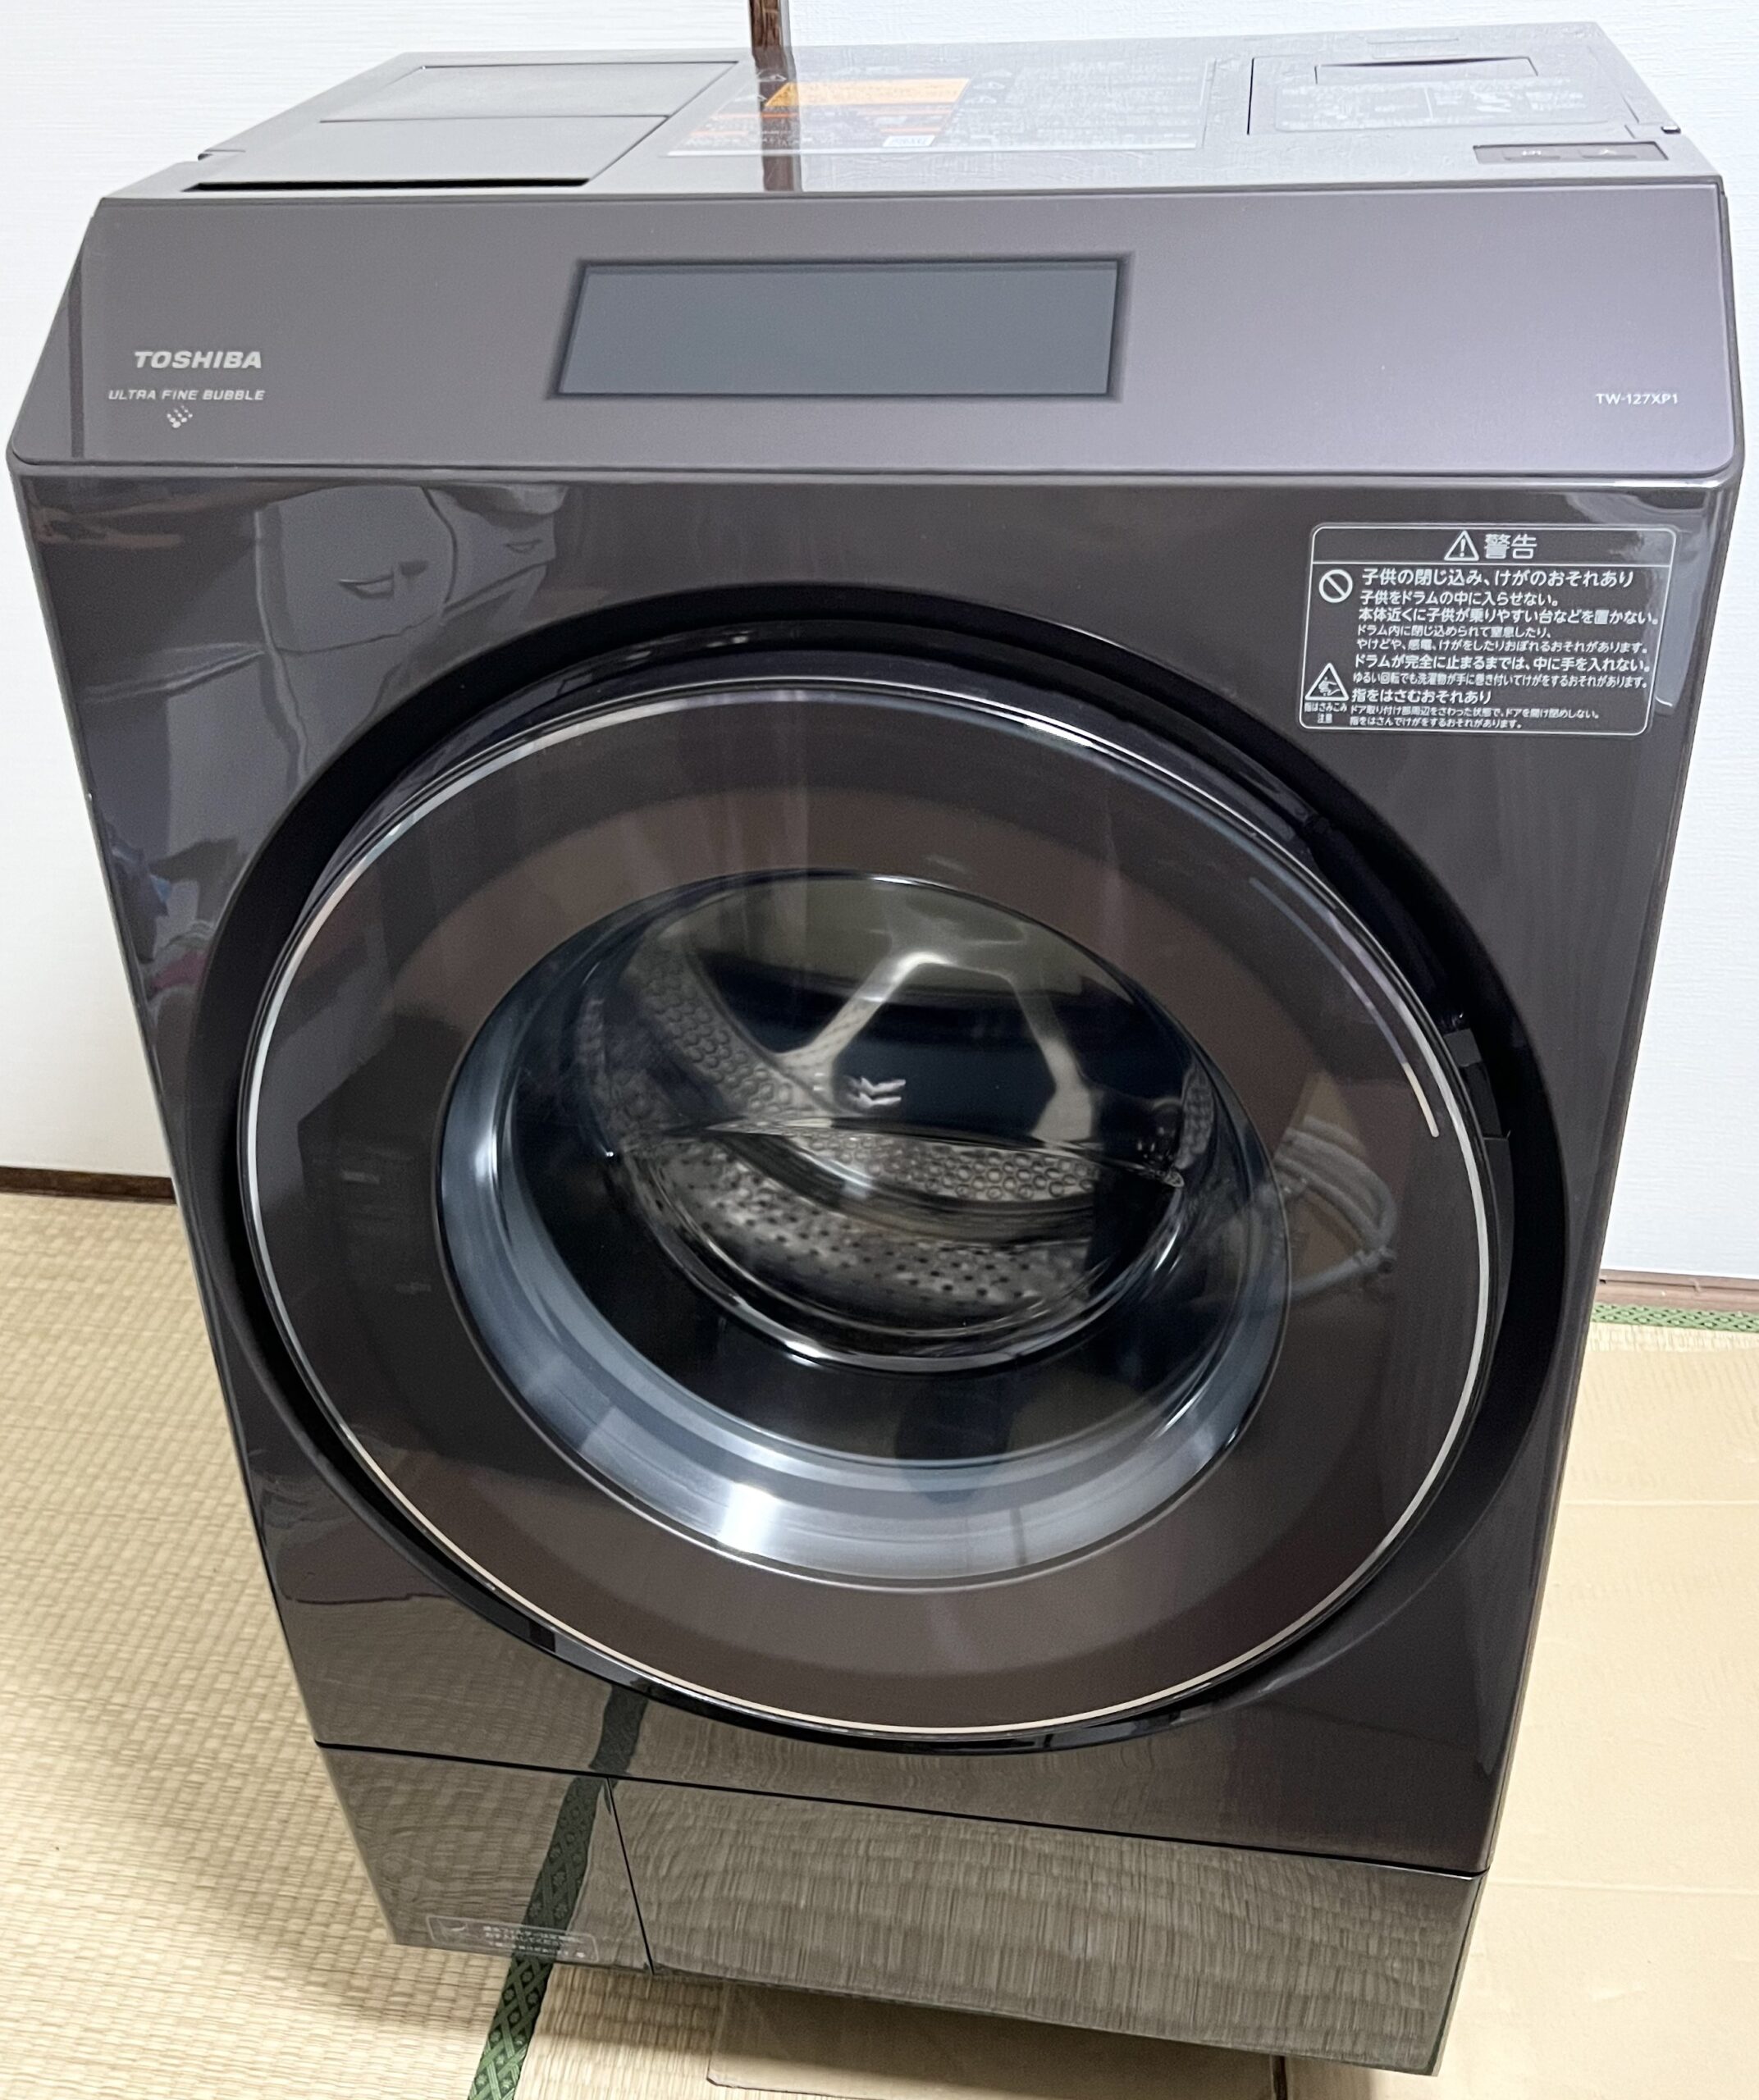 39,699円『ZABOON』ドラム洗濯機 TOSHIBA TW-127XP1L 2021年製